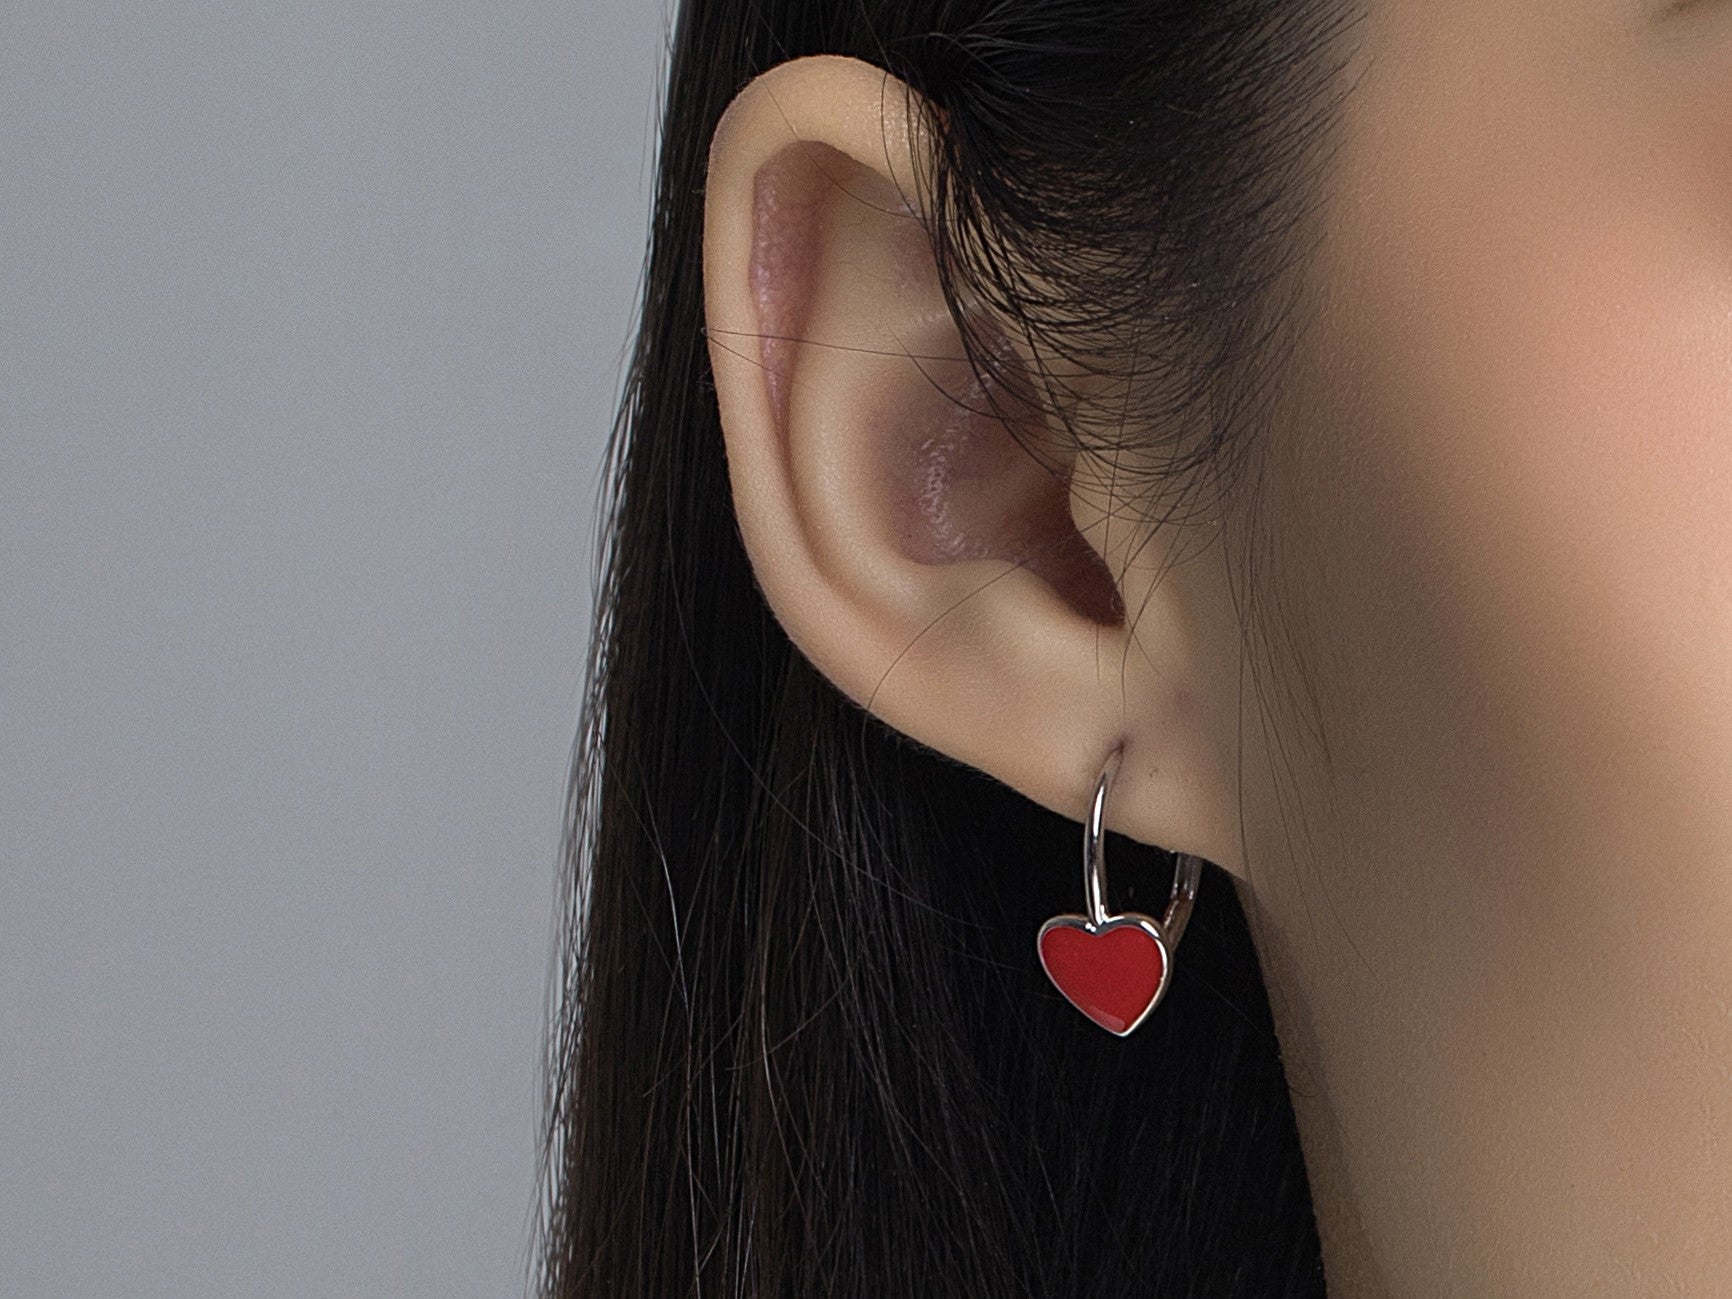 ( Three Colours ) Little Heart Enamel Drop Earrings for Women